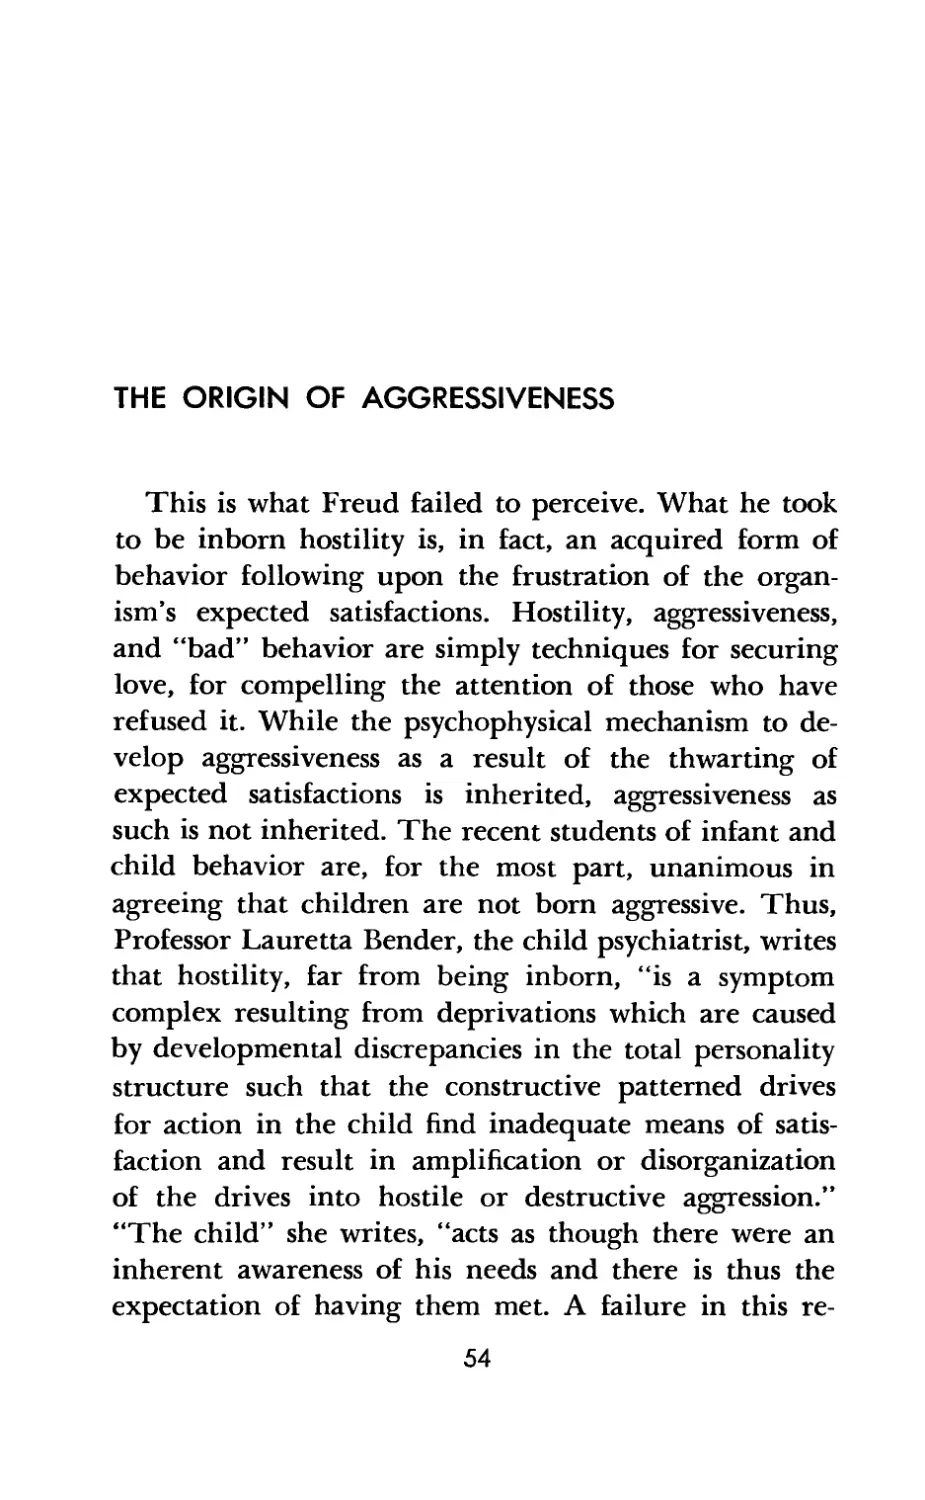 The Origin of Aggressiveness